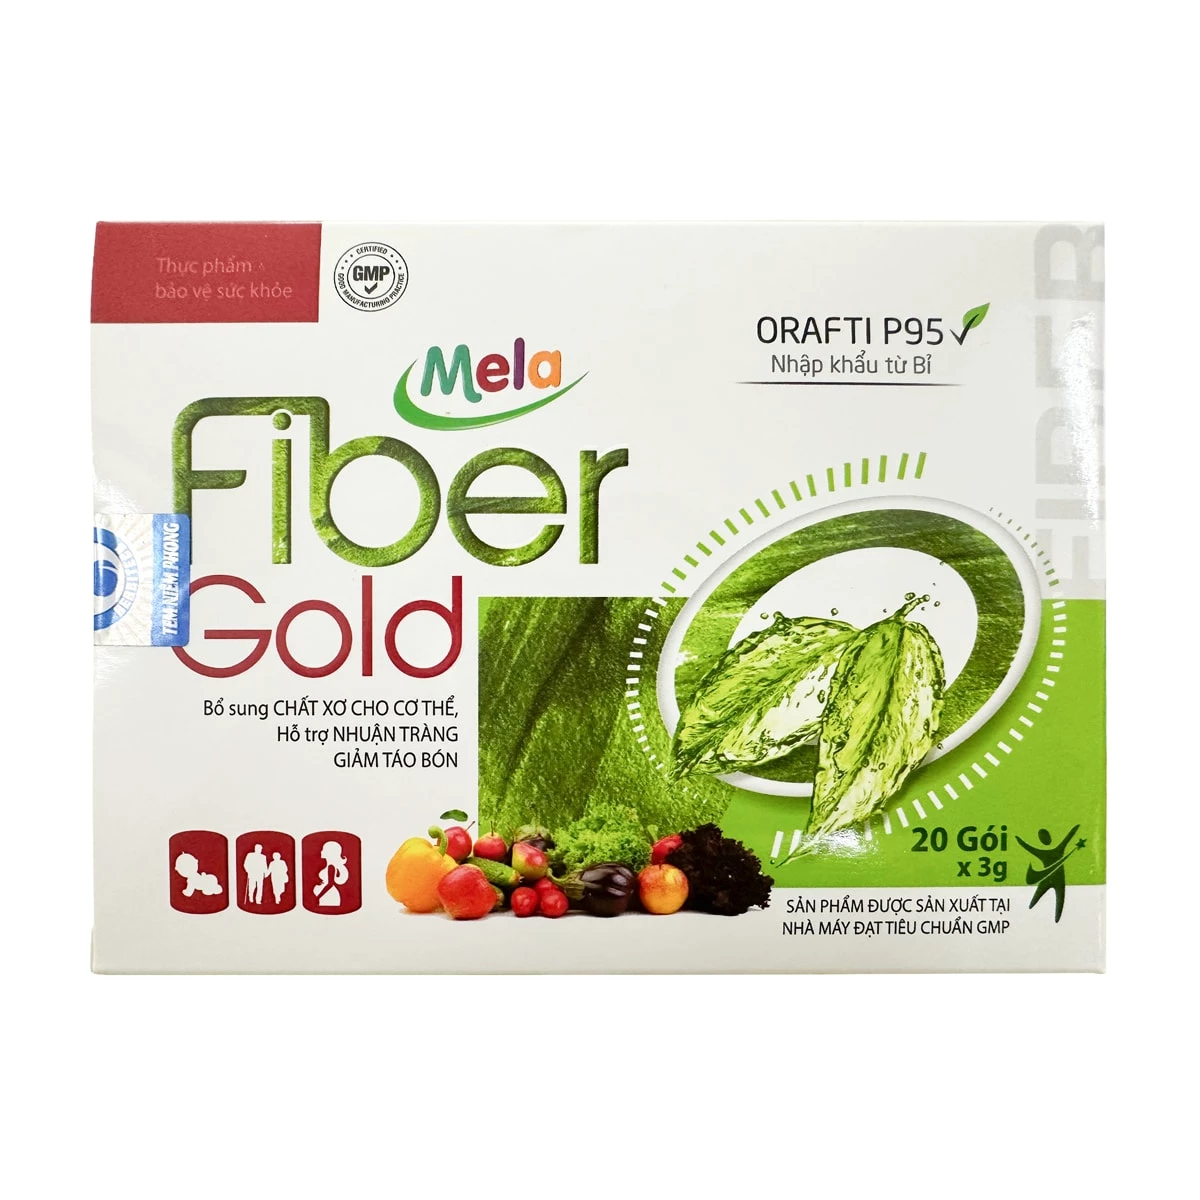 Mela Fiber Gold - Bổ sung chất xơ, hỗ trợ nhuận tràng, giảm táo bón